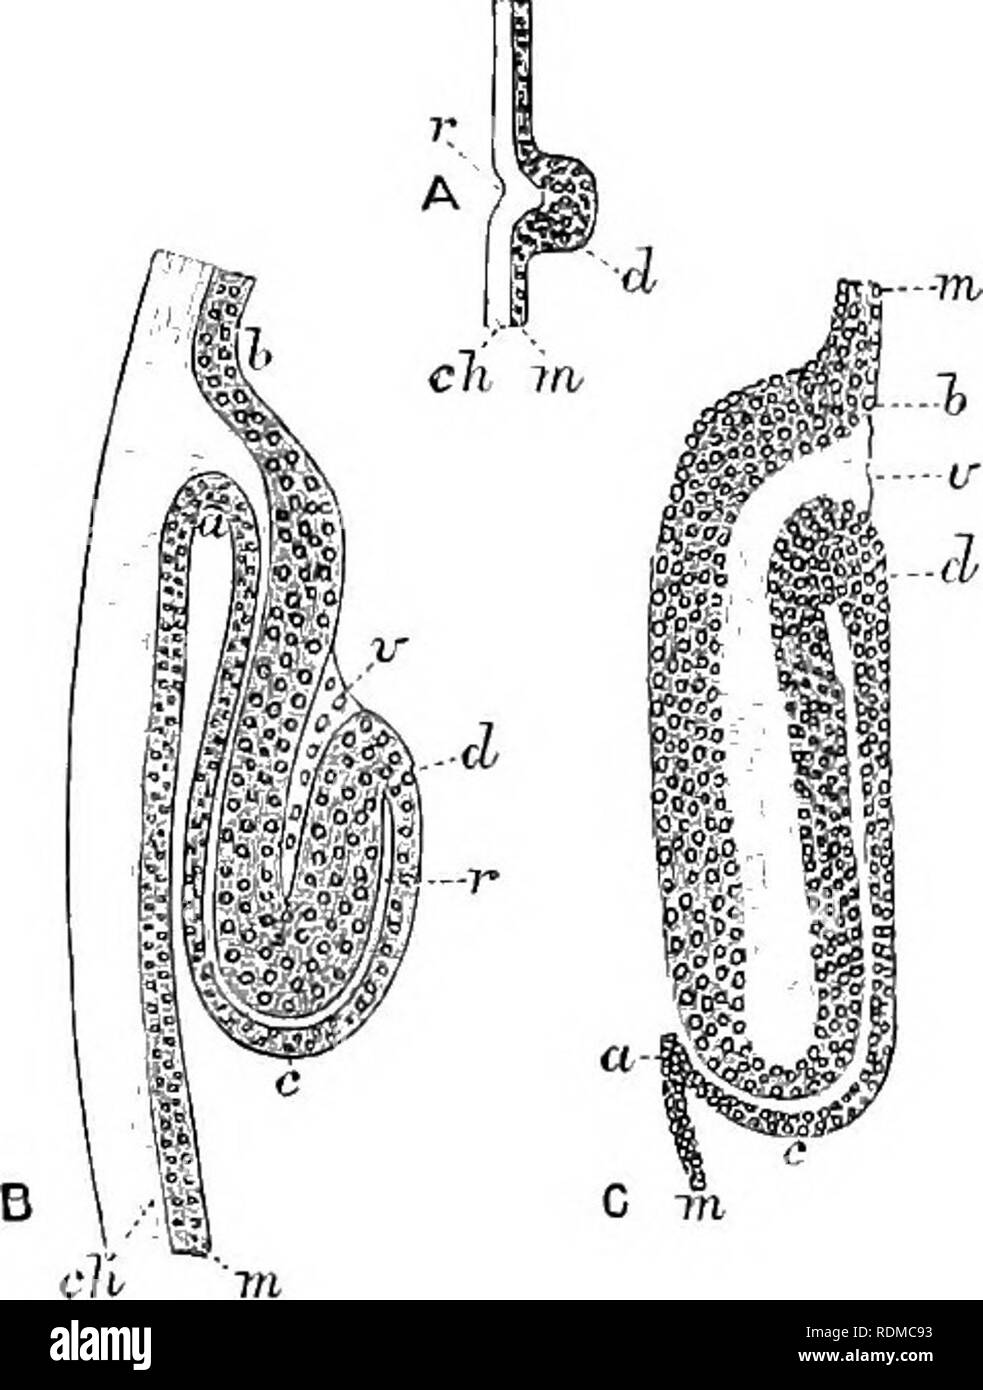 . Il Cambridge storia naturale. Zoologia. 48o NEUROPTERA C la posizione del parafango tlie sull'esterno del hodr è dovuta all'estrazione del tegumento chitinous, o a un processo di eversione o a entrambi. La Fia. 324. Â sviluppo di -ala-s di Phryganeidae. (Dopo Dewitz.), la porzione di corpo-parete del giovane larva di Trichostegia ; c/i, chitina, formando in r jiro- jection nell'hypodermfs m; r e d tlms formante il primo rudiment dell'ala. B, le parti in un ampiamente coltivato larva ; a, c, d, h, molto cresciuta hypo- derma separato in due parti da r, l'estensione di penetrazione del c Foto Stock